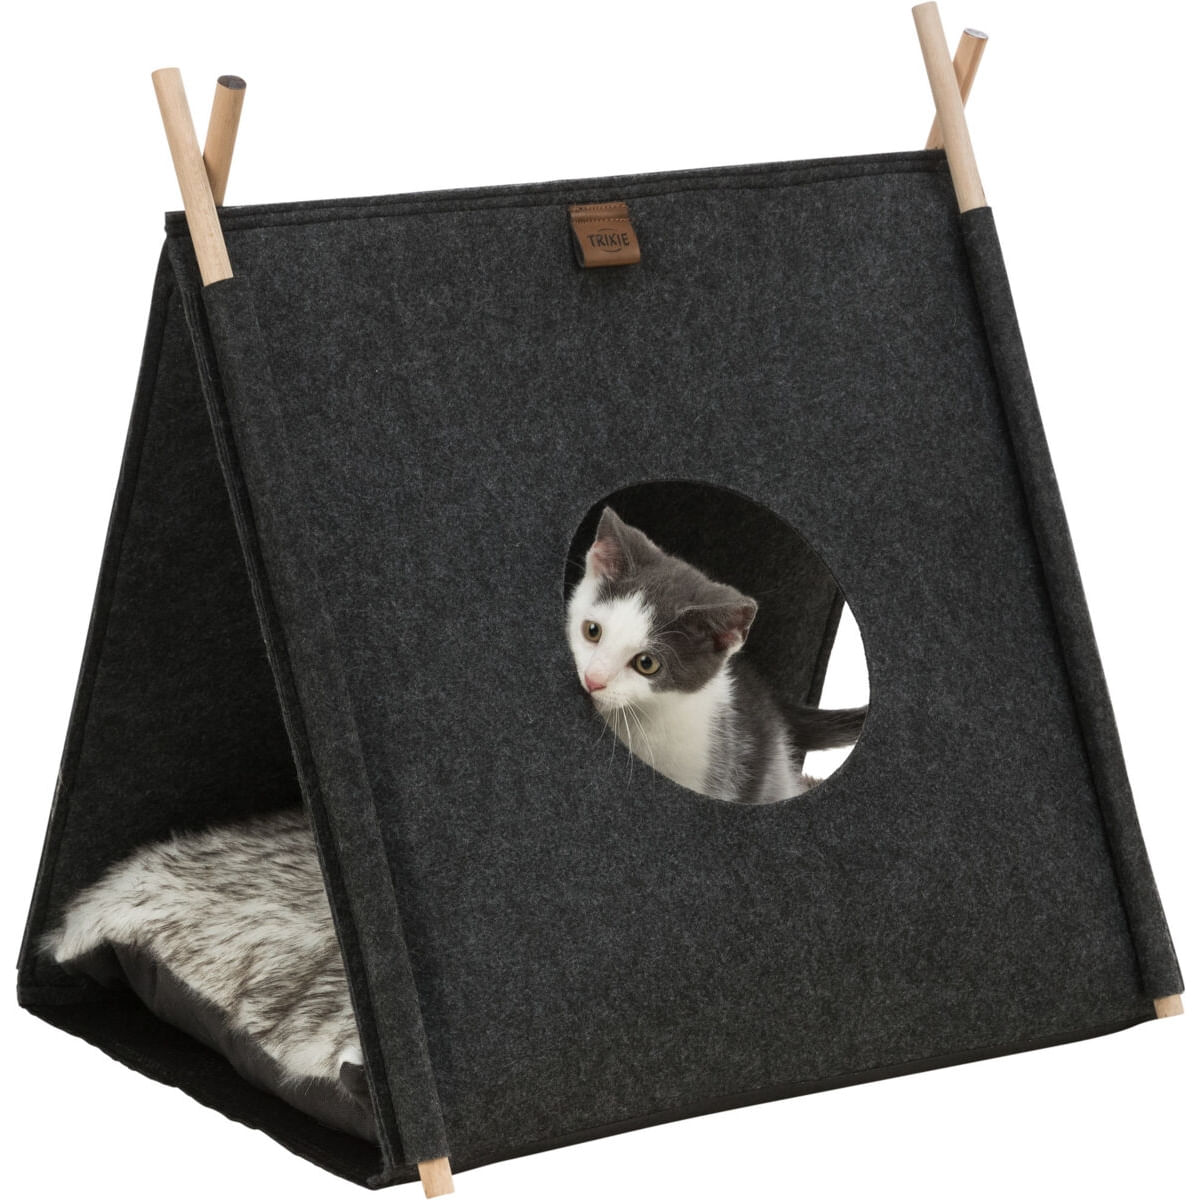 TRIXIE Elfie, căsuța pisici, poliester, husă detașabilă, pernă reversibilă negru și gri, 46x52x50cm